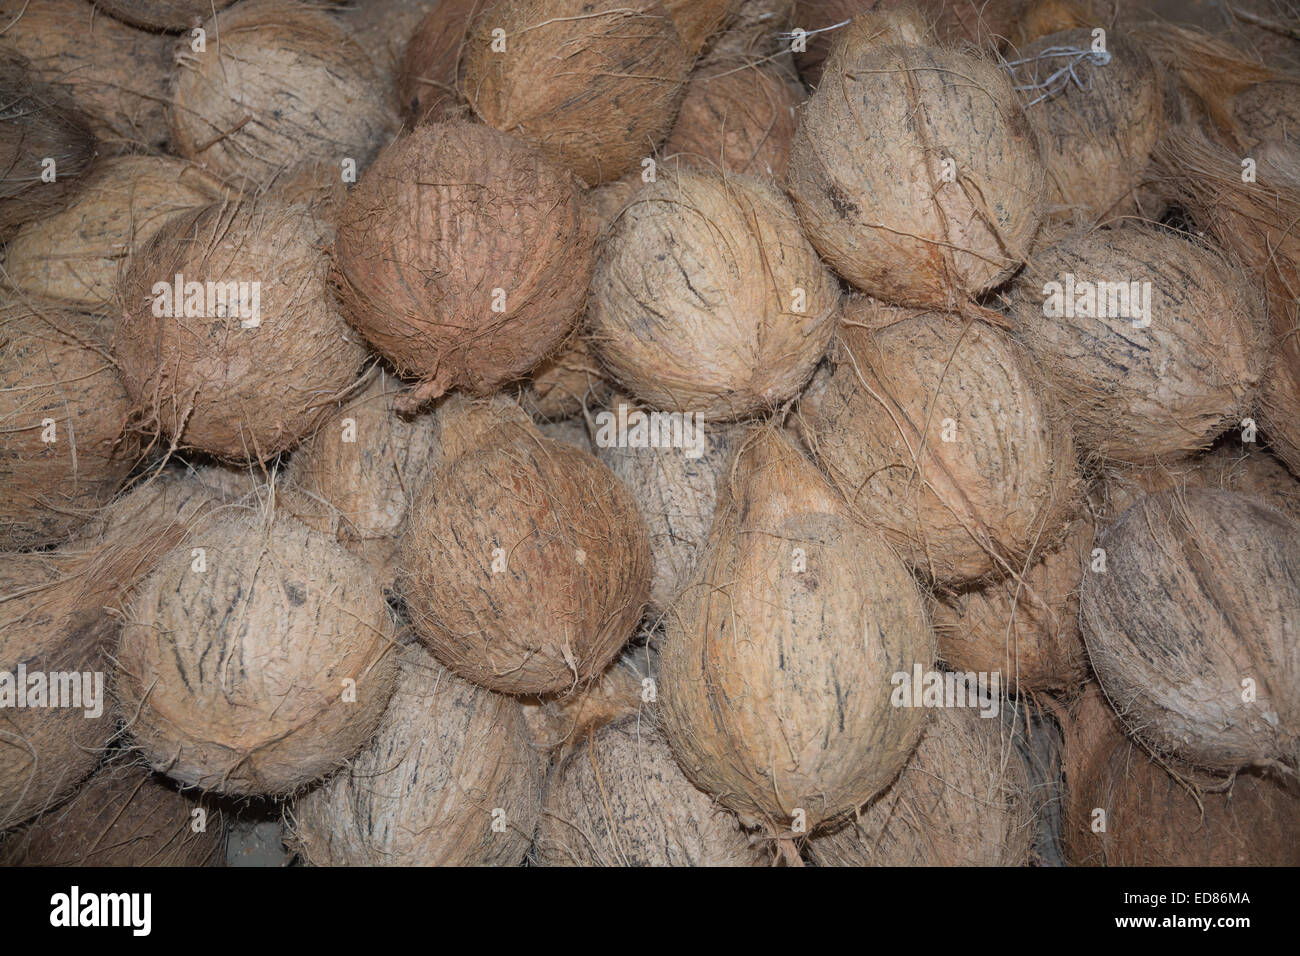 Coconuts closeup in a market, Sri Lanka, Asia. Stock Photo